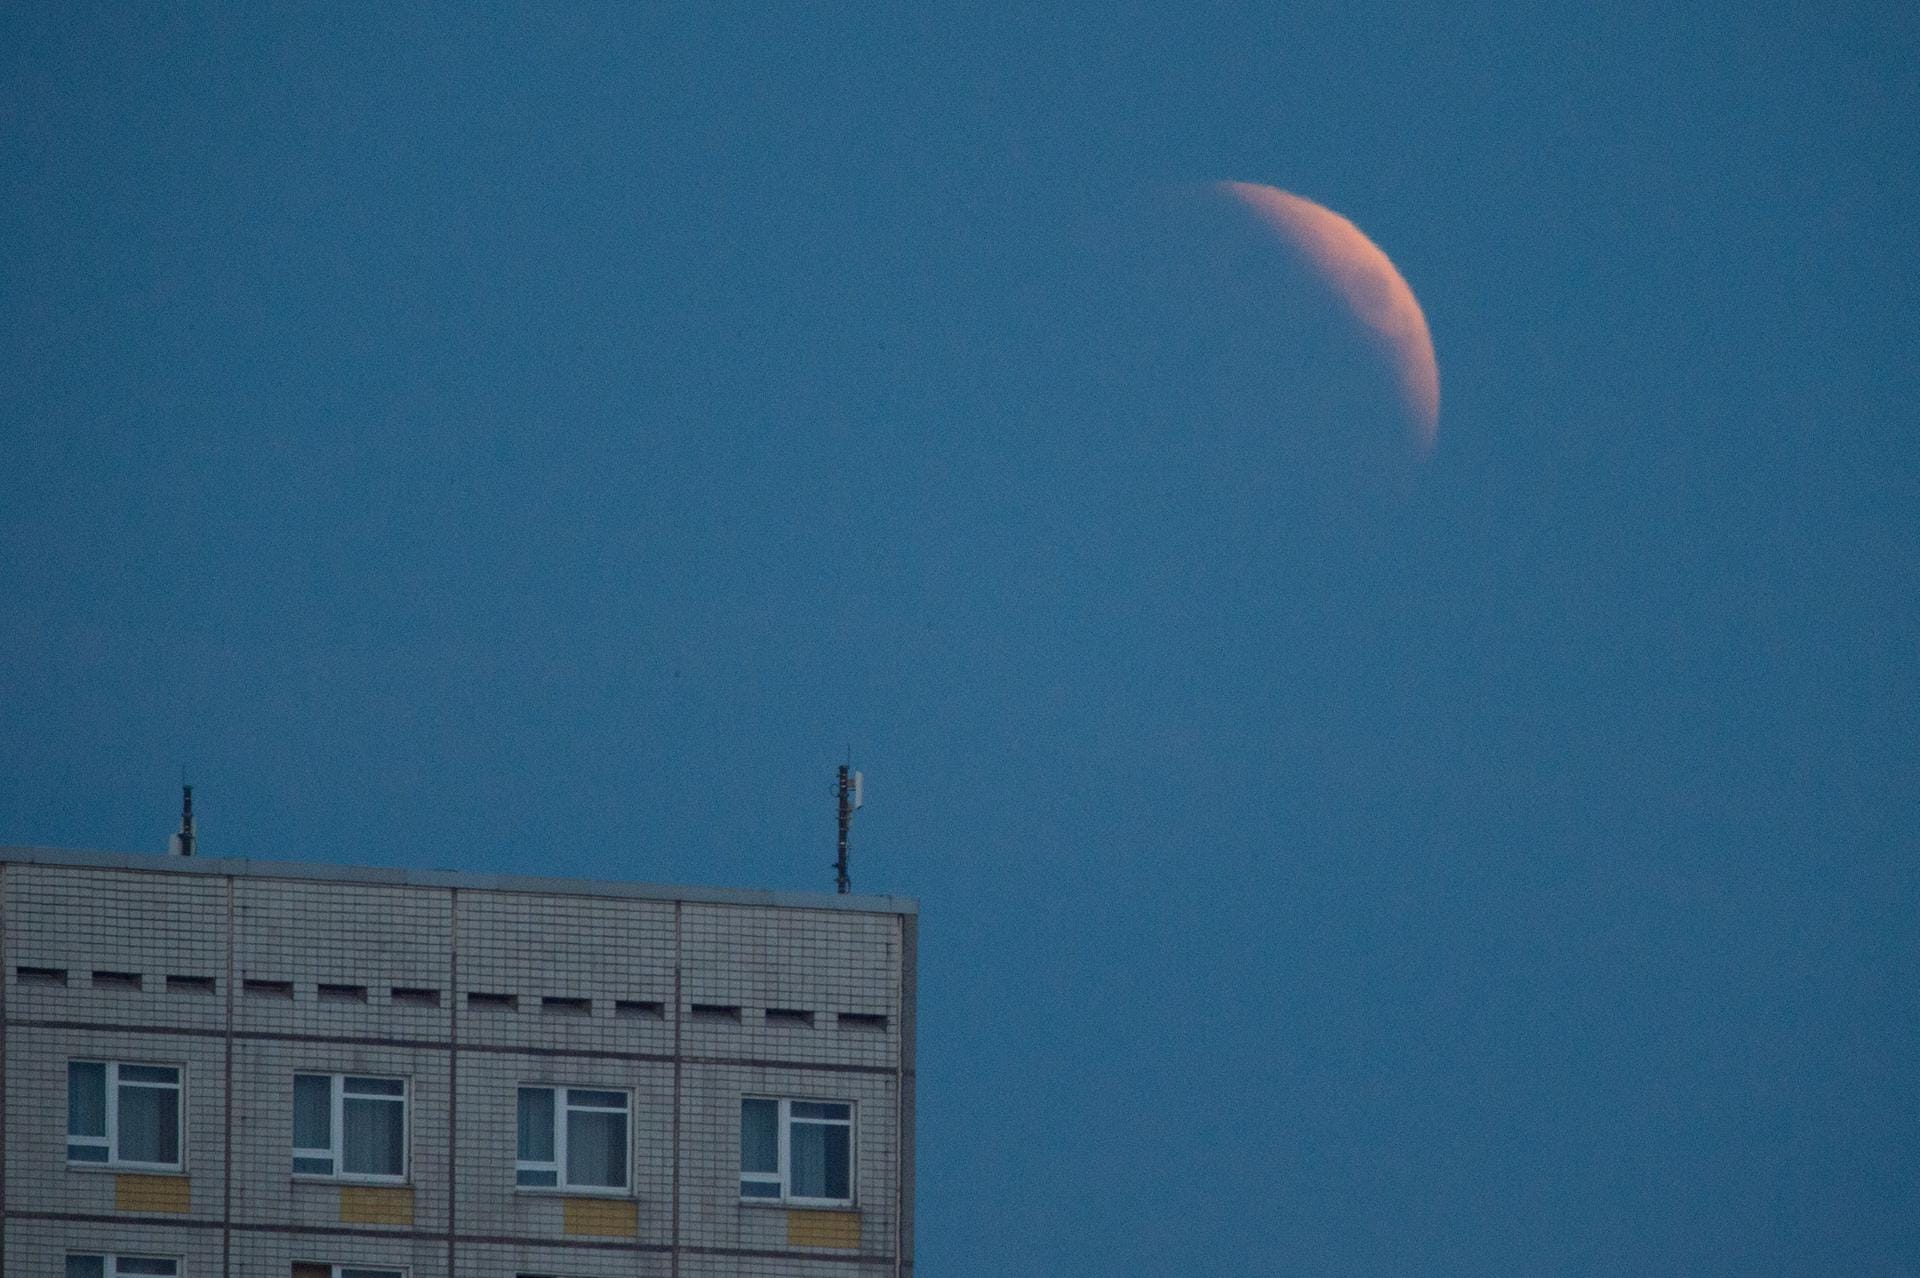 Die Mondfinsternis beginnt: Der aufgehende Mond ist hinter einem Hotelgebäude in Dresden zu sehen.